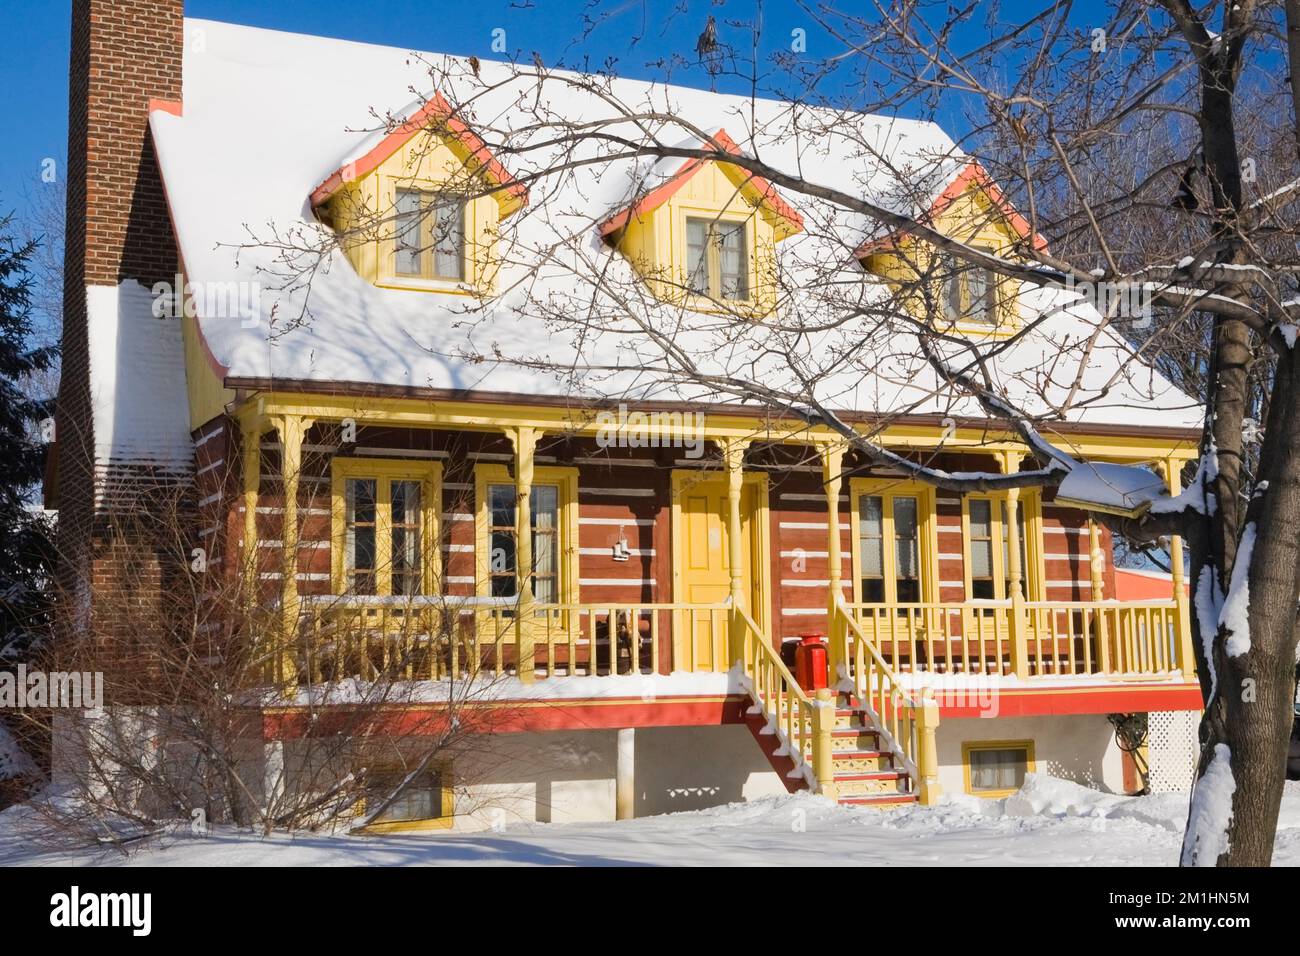 1978 réplique construite de l'ancien 1800s jaune avec garniture orange maison en rondins de style Canadiana en hiver. Banque D'Images